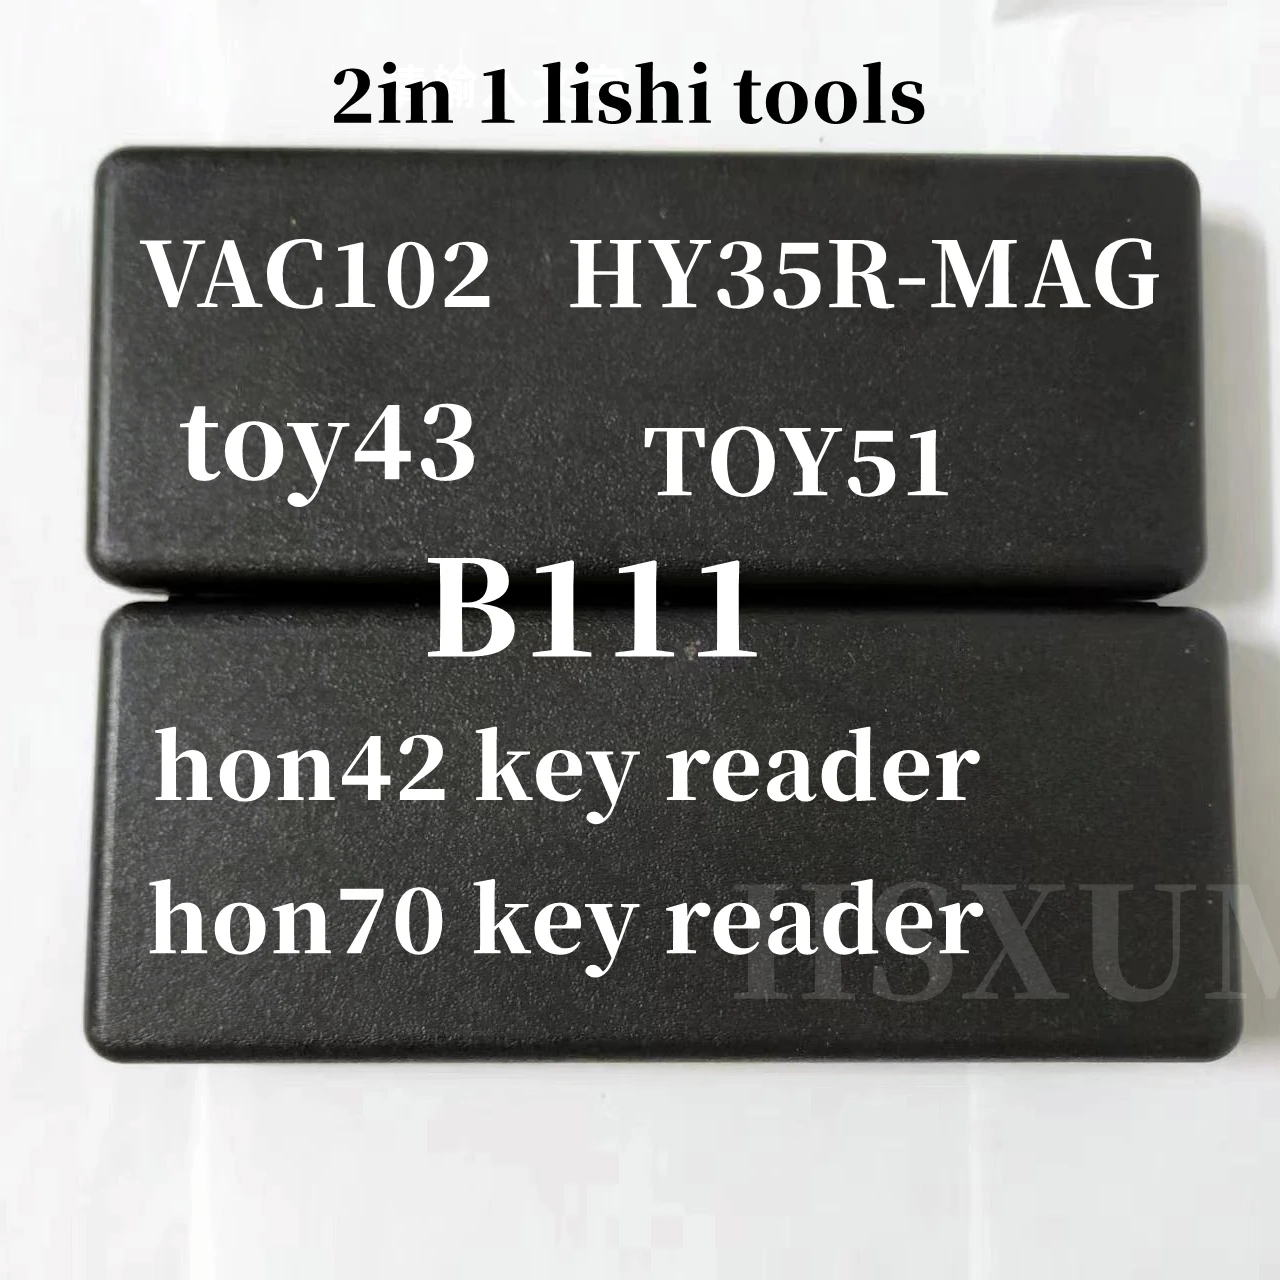 

Decoder lishi 2in 1 Original tools lishi 2 in 1 B111 VAC102 TOY43 HY35R-MAG TOY51 HON70 HON42 key reader hu162t9 Locksmith